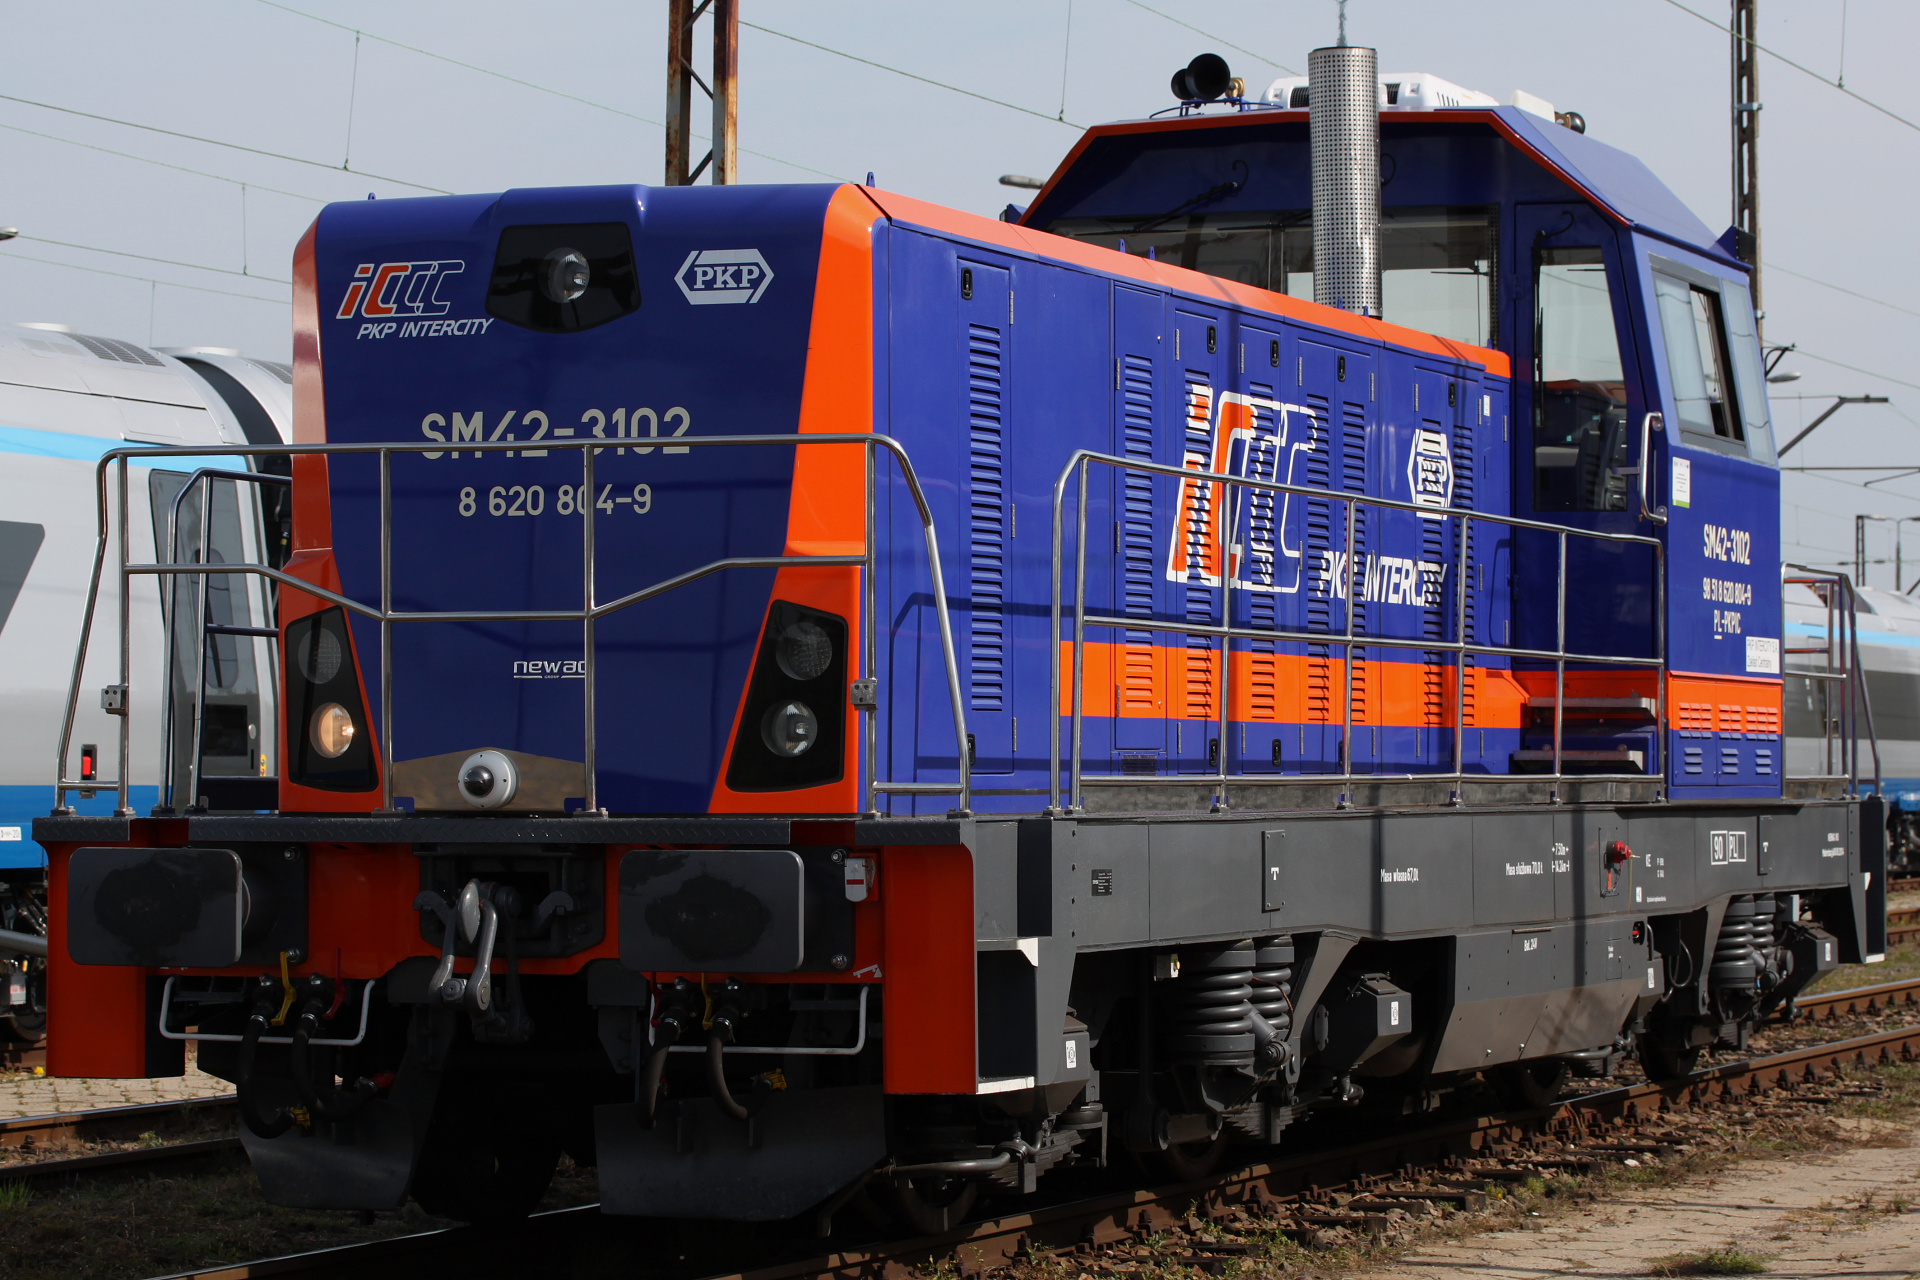 SM42-3102 (Pojazdy » Pociągi i lokomotywy » Newag 18D)